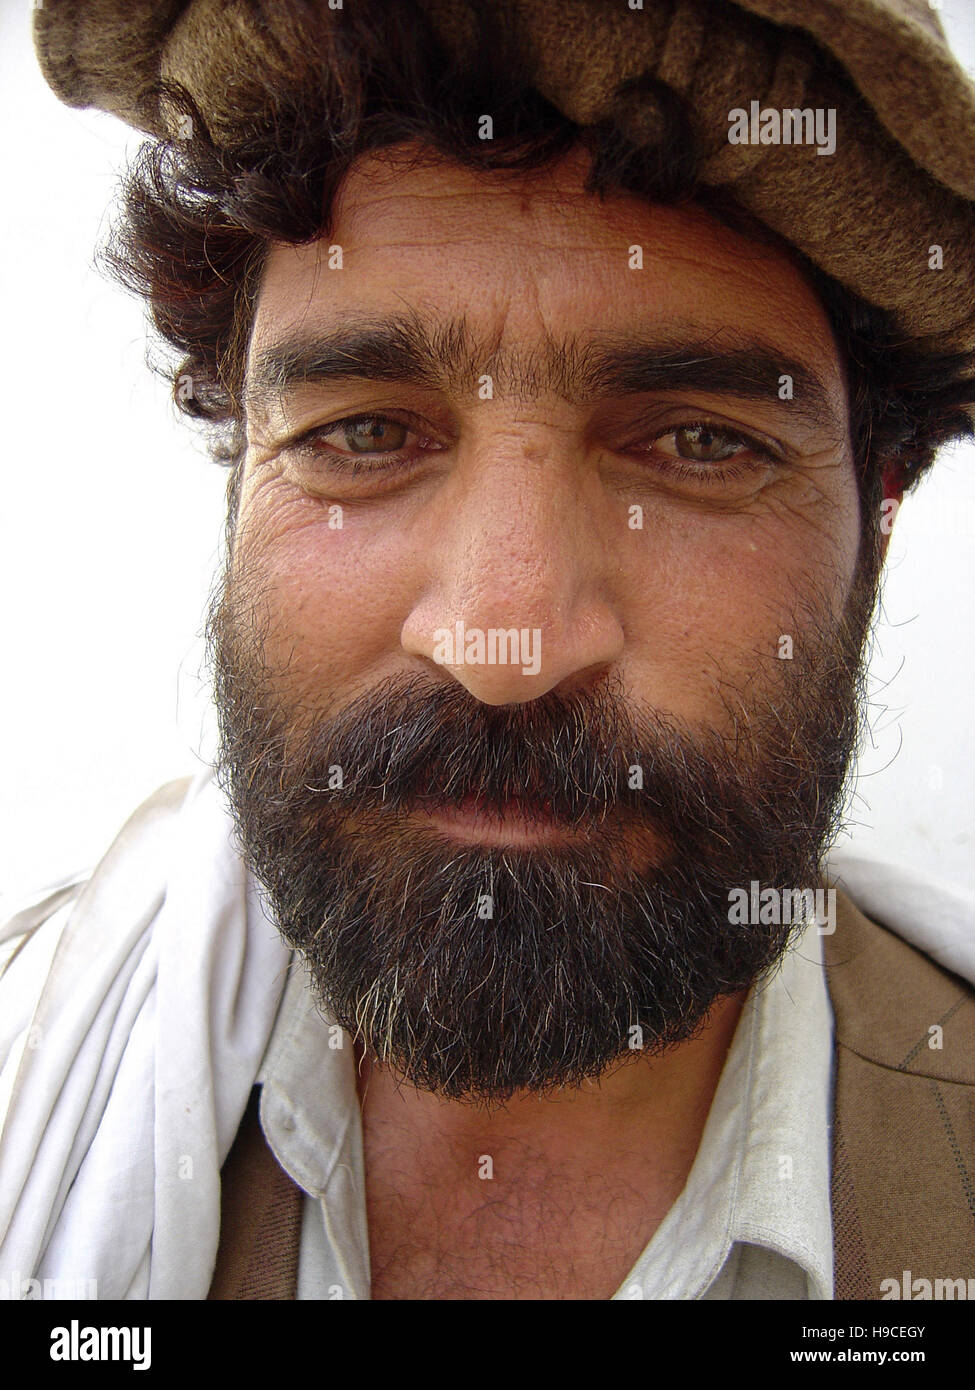 31 Maggio 2004 - Ritratto di un uomo dentro il Wazir Akbar Khan centro ortopedico nel nord di Kabul, Afghanistan. Foto Stock